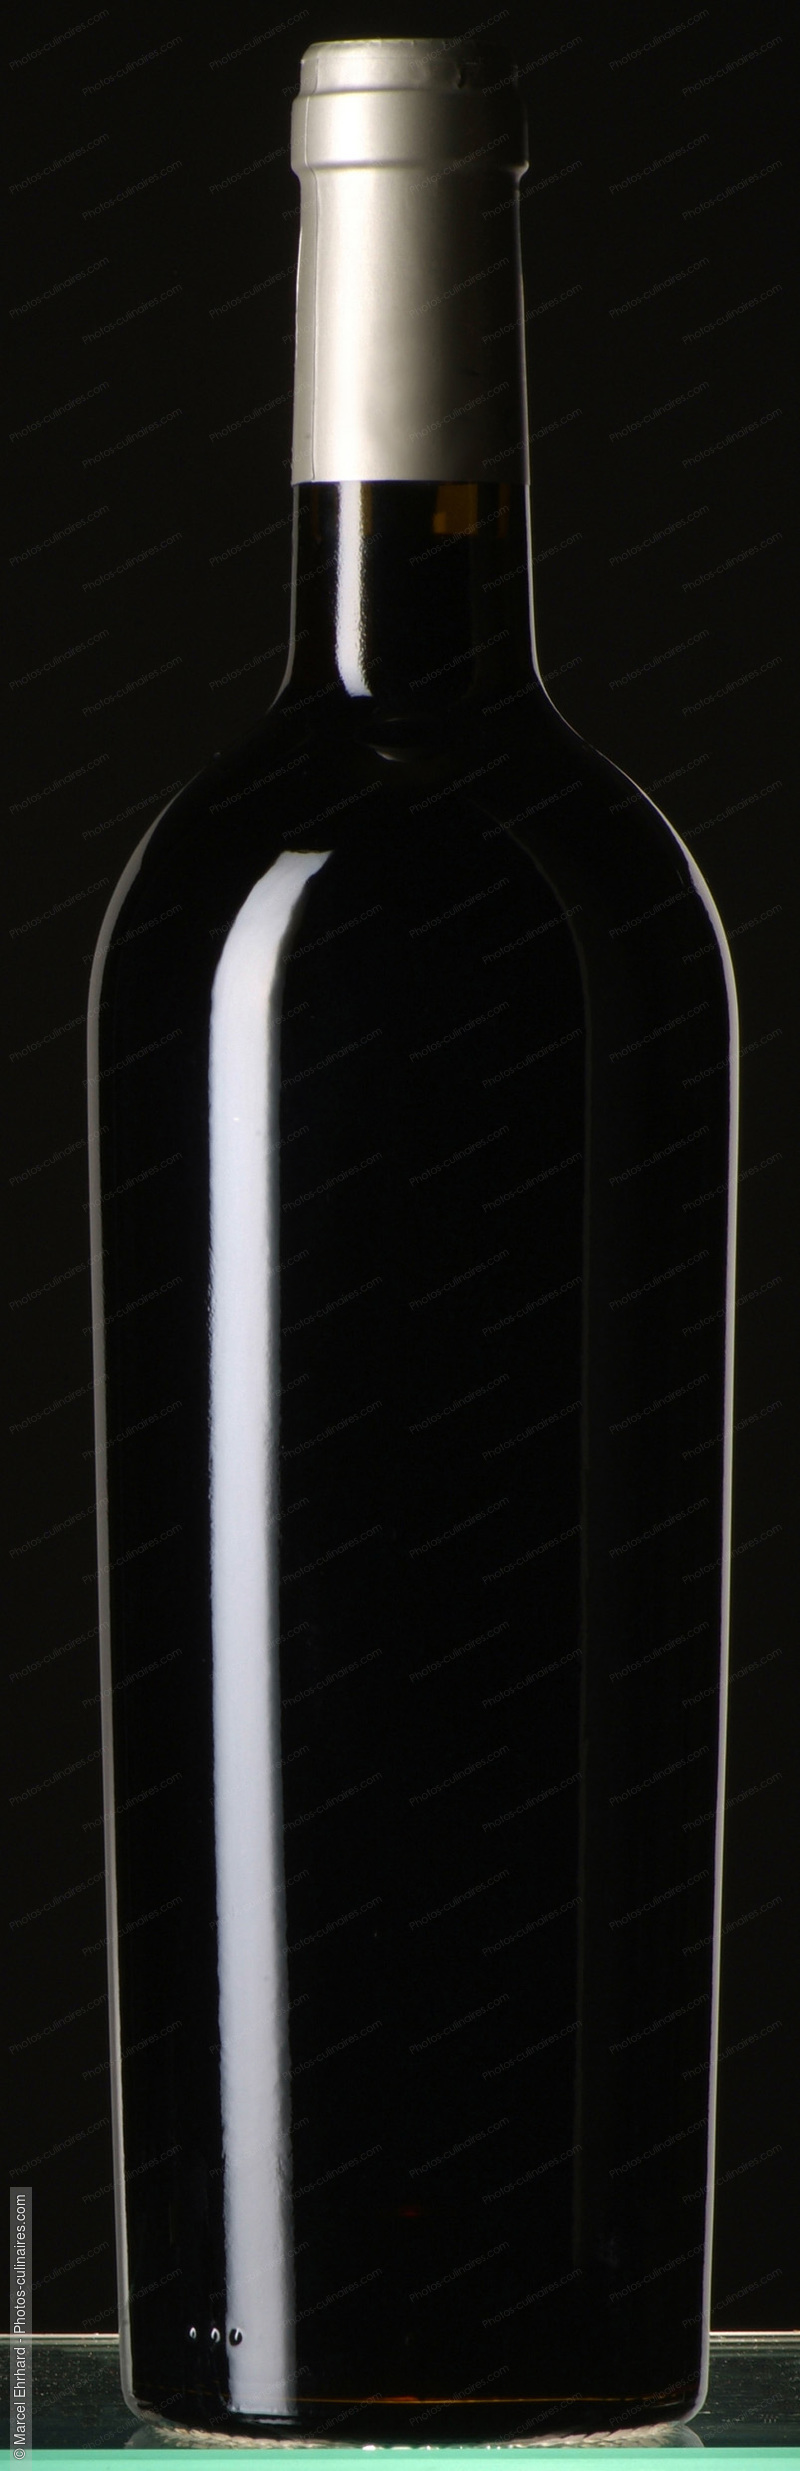 Bouteille de vin sur fond noir - photo référence BO239N.jpg